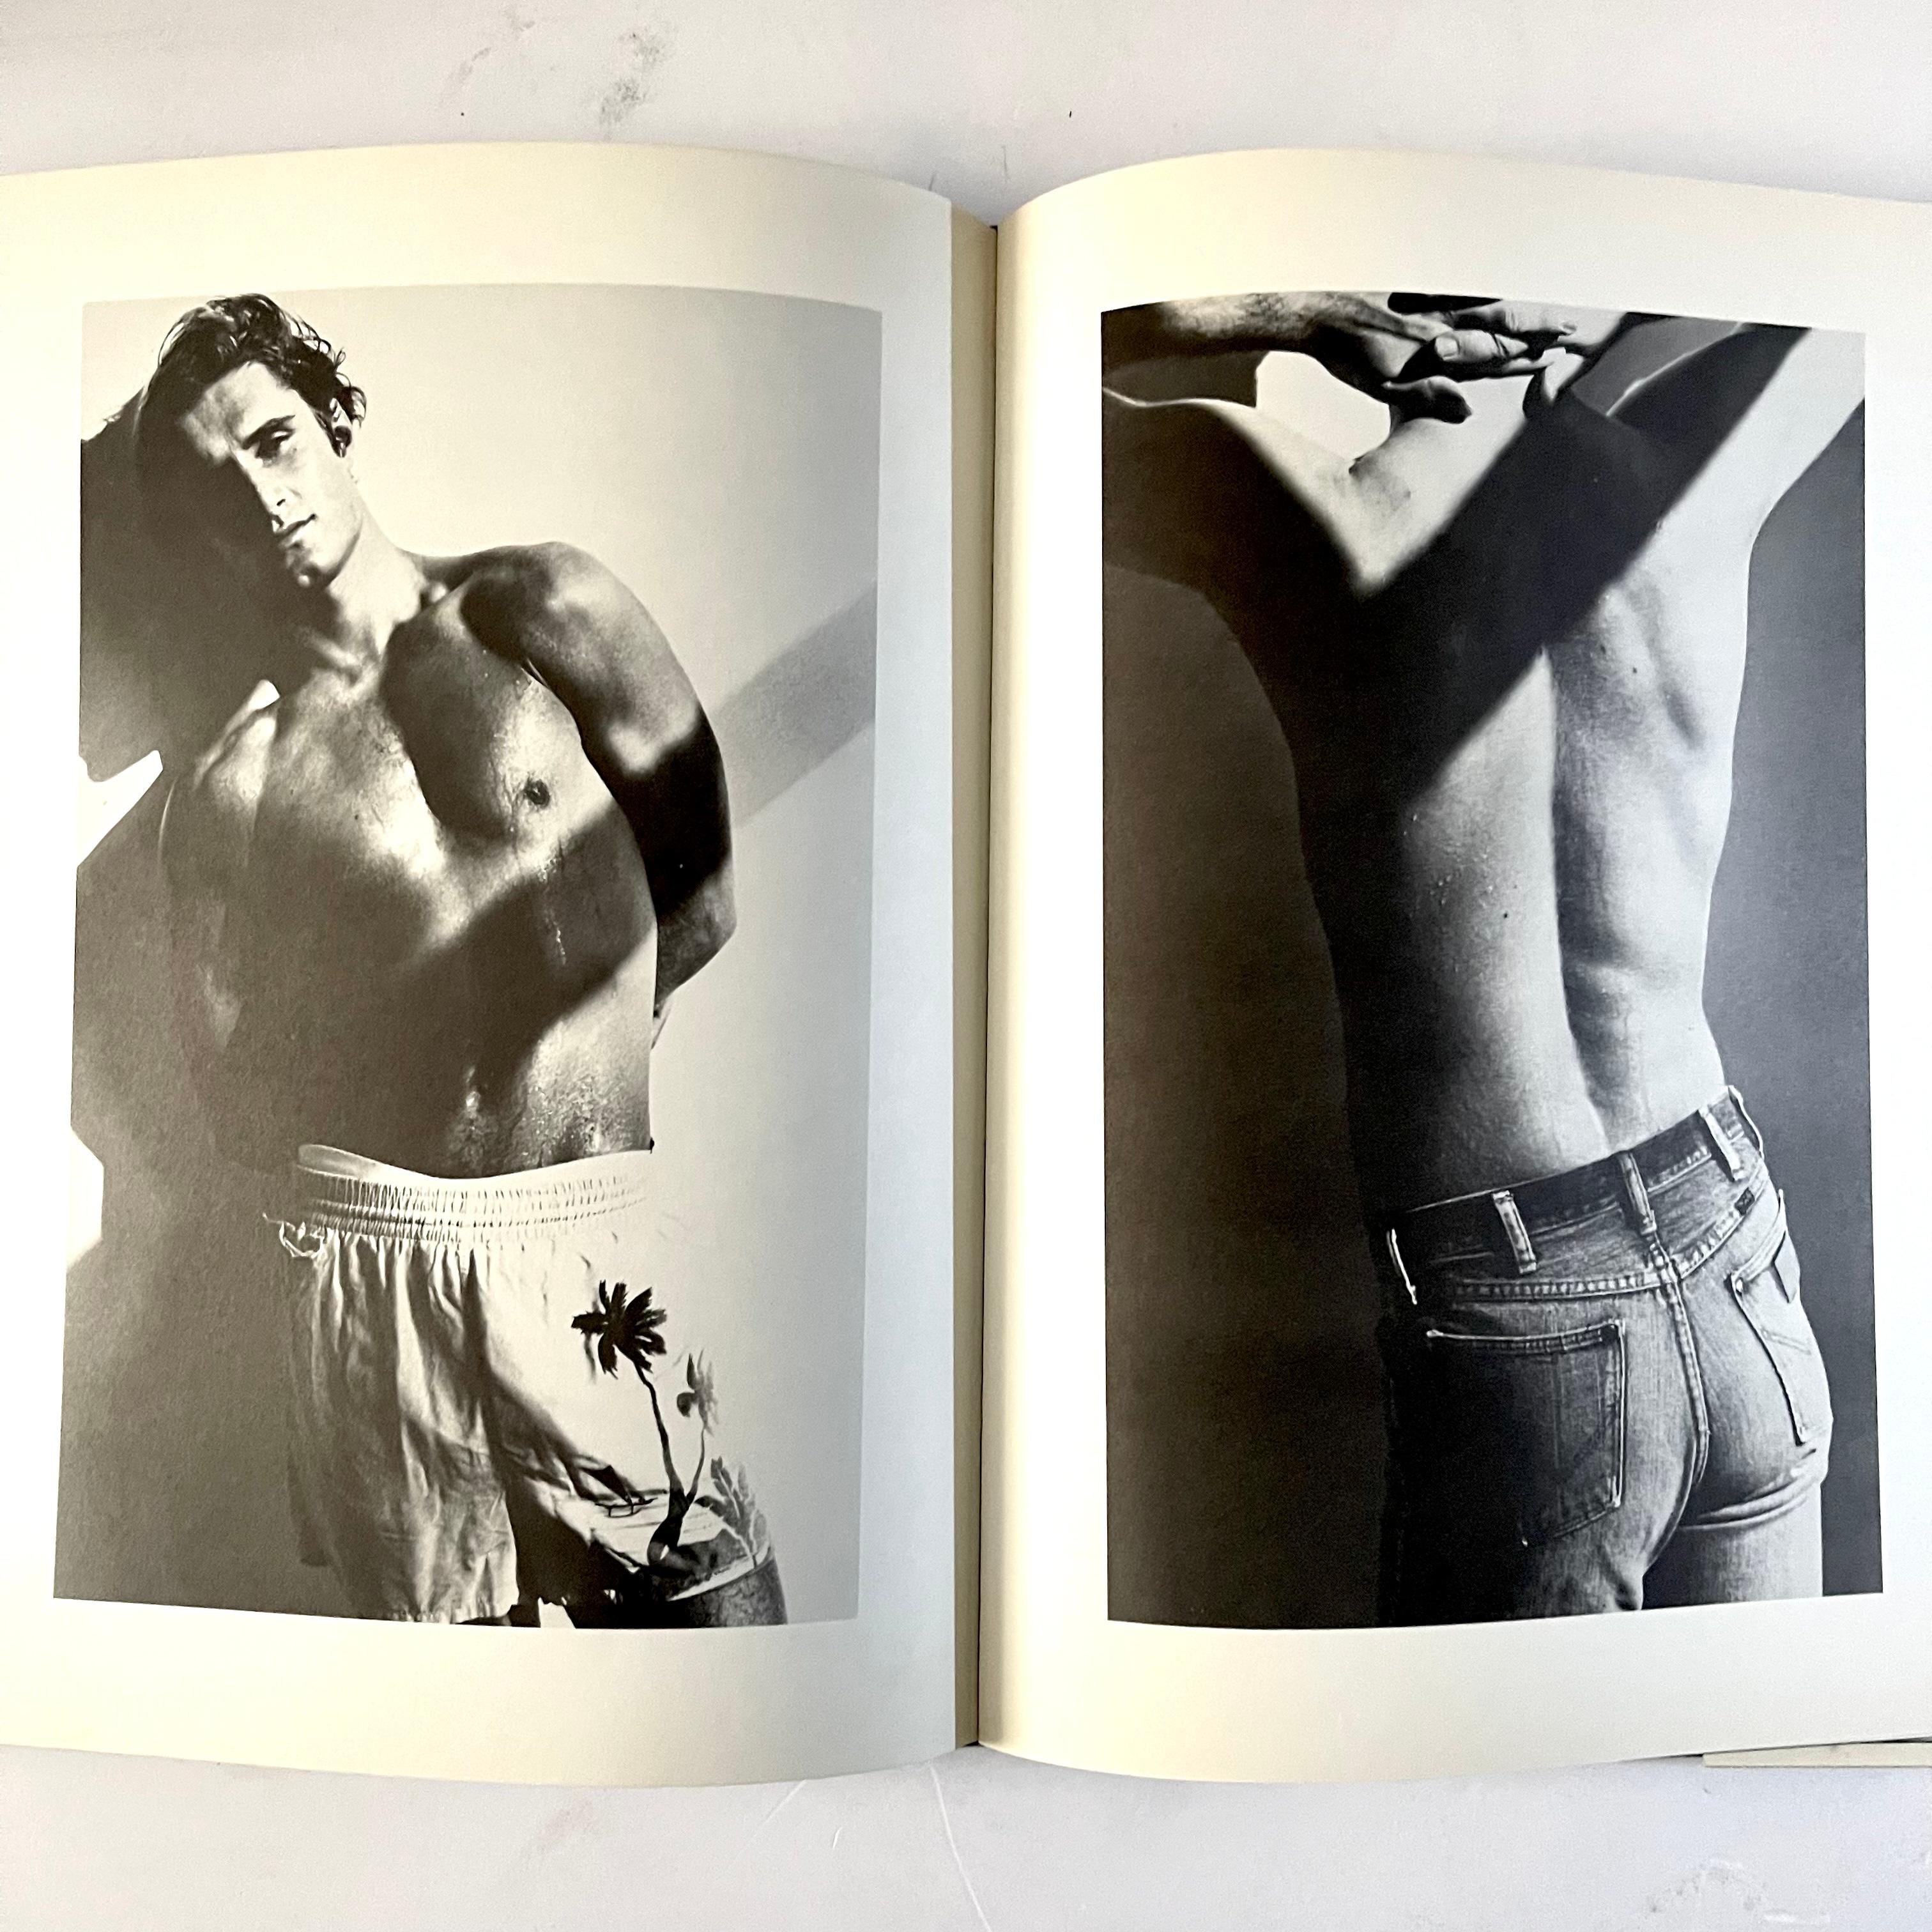 Première édition américaine publiée par Hawthorn New York 1977

Looking Good ; le premier livre à présenter la photographie de Bruce Weber et, bien sûr, un livre de toilettage pour hommes ! Des mâchoires fortes, une section sur les produits